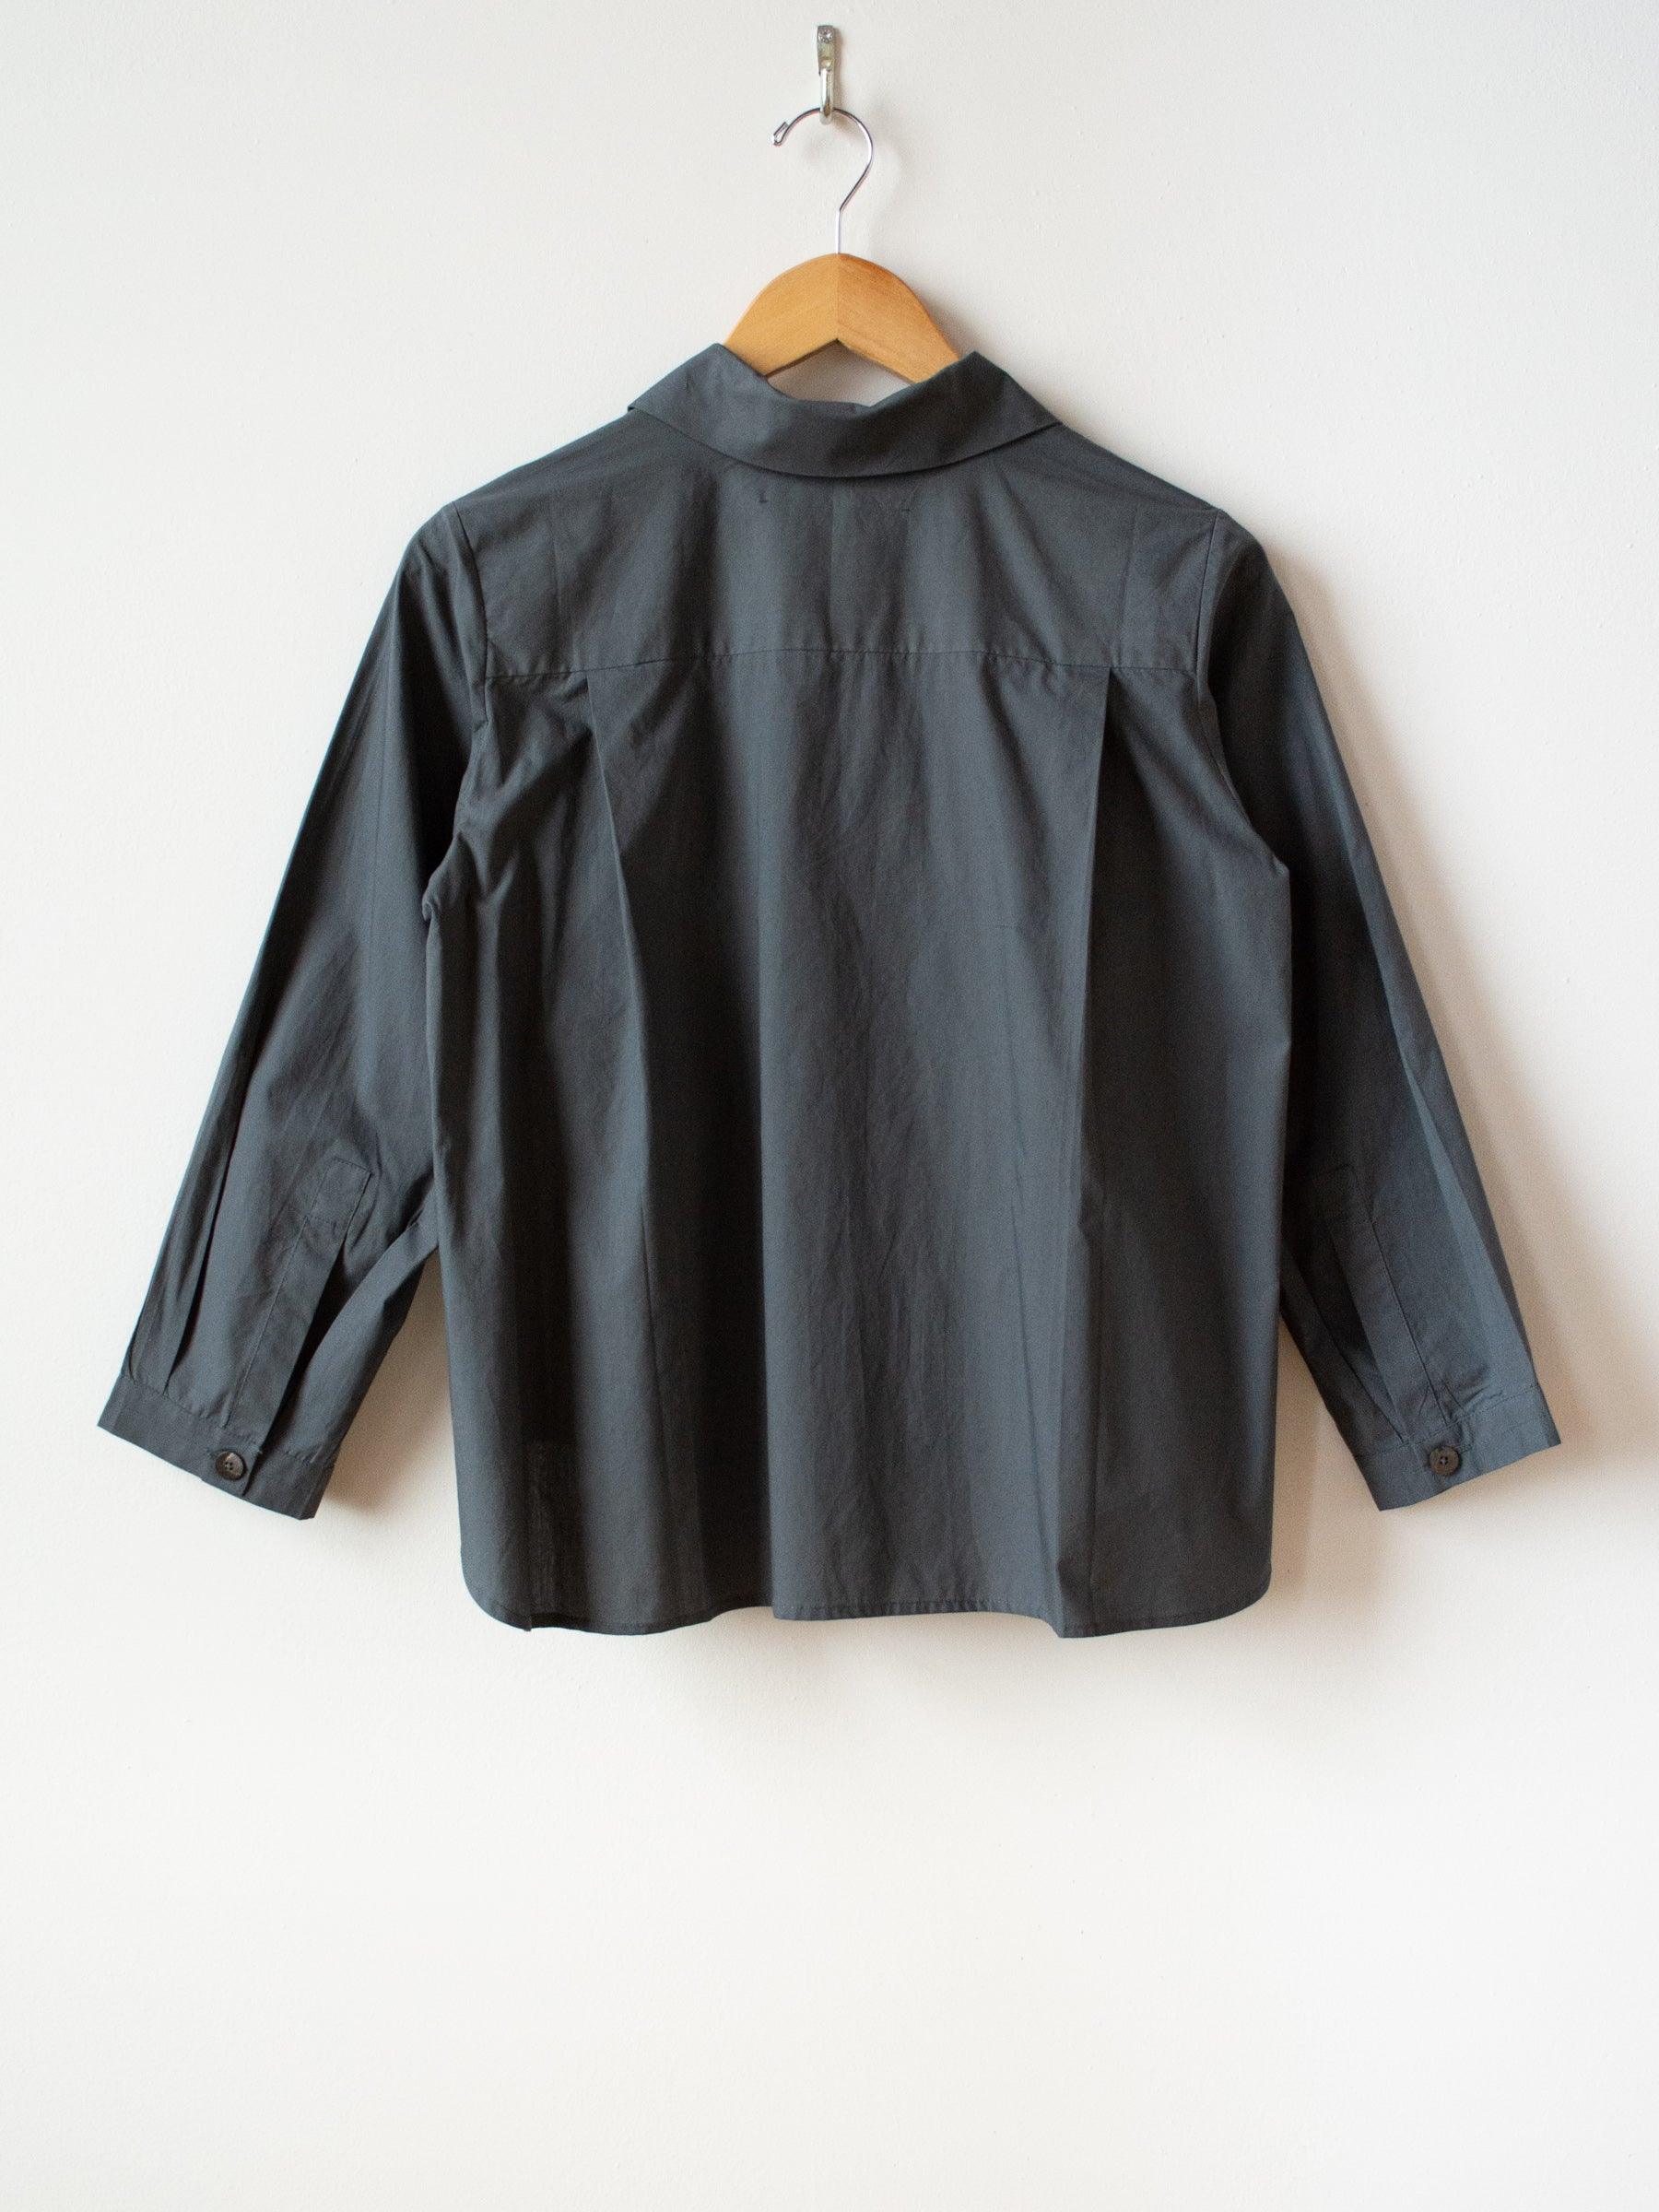 Namu Shop - Jan Machenhauer Kiki Shirt - Green Slate Cotton Poplin